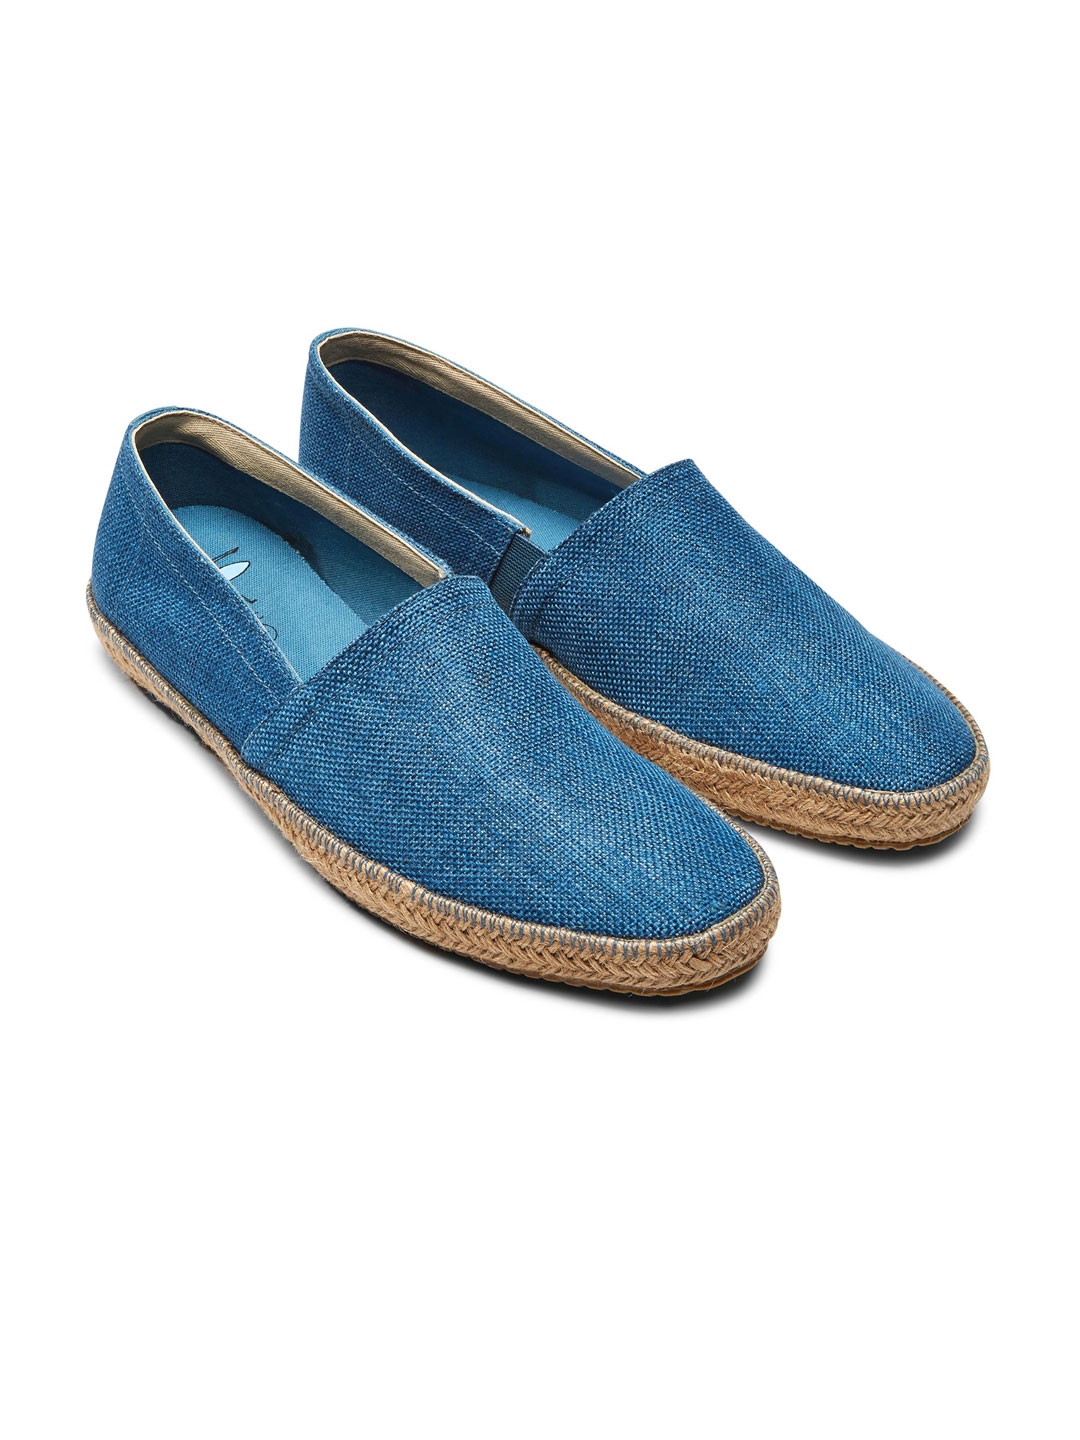 Buy Next Men Blue Canvas Jute Trim Espadrilles - Casual Shoes for Men ...